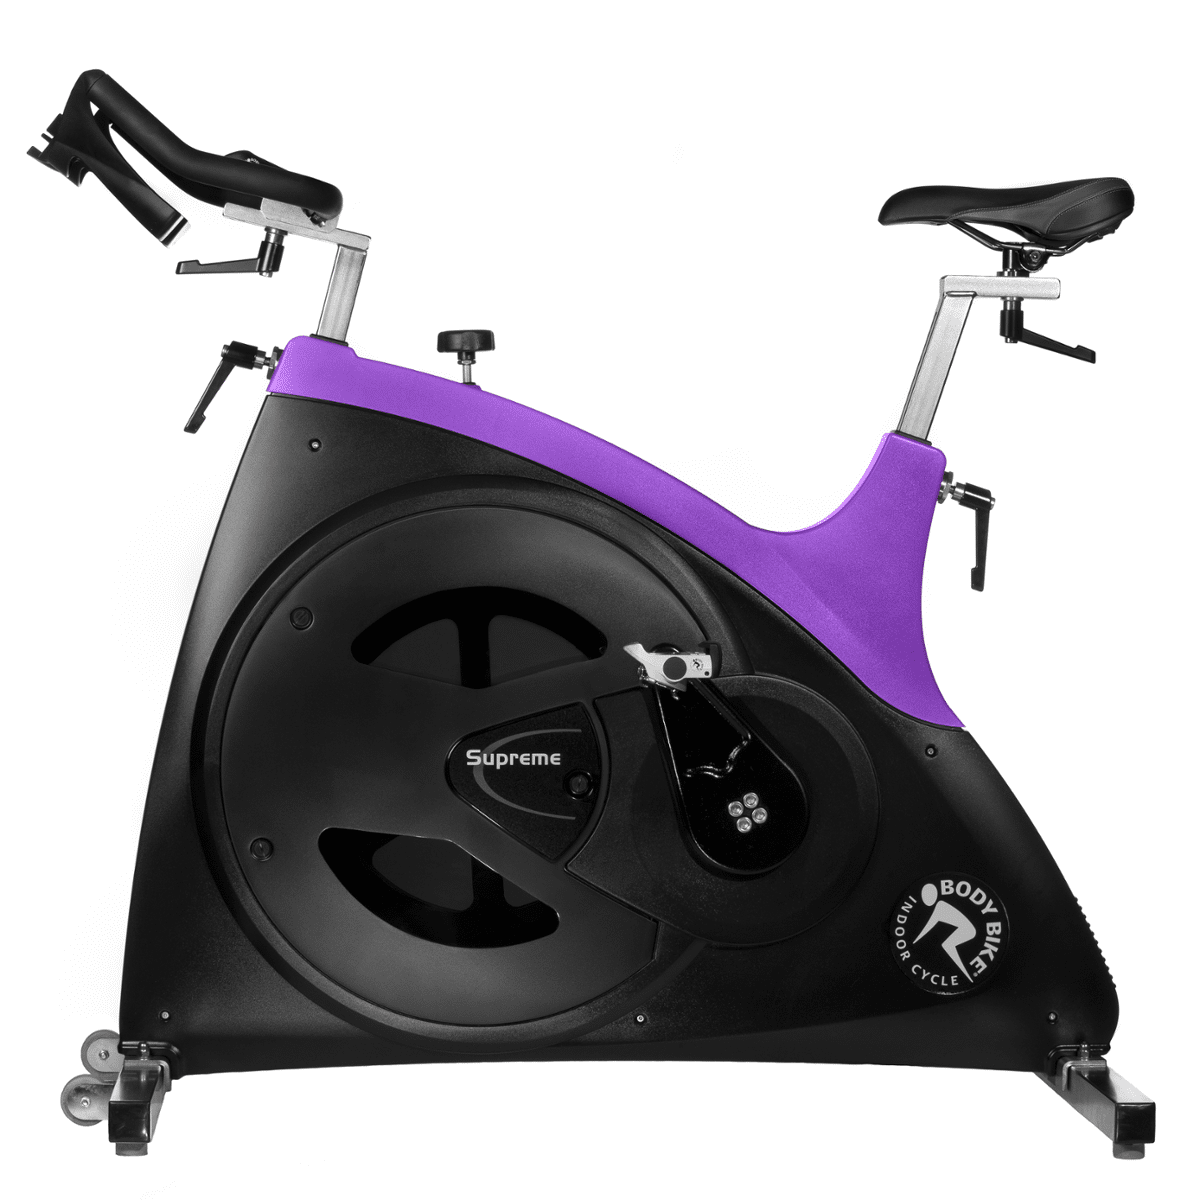 Rower Spiningowy Supreme 99170010 Body Bike Purple (Zdjęcie 1)